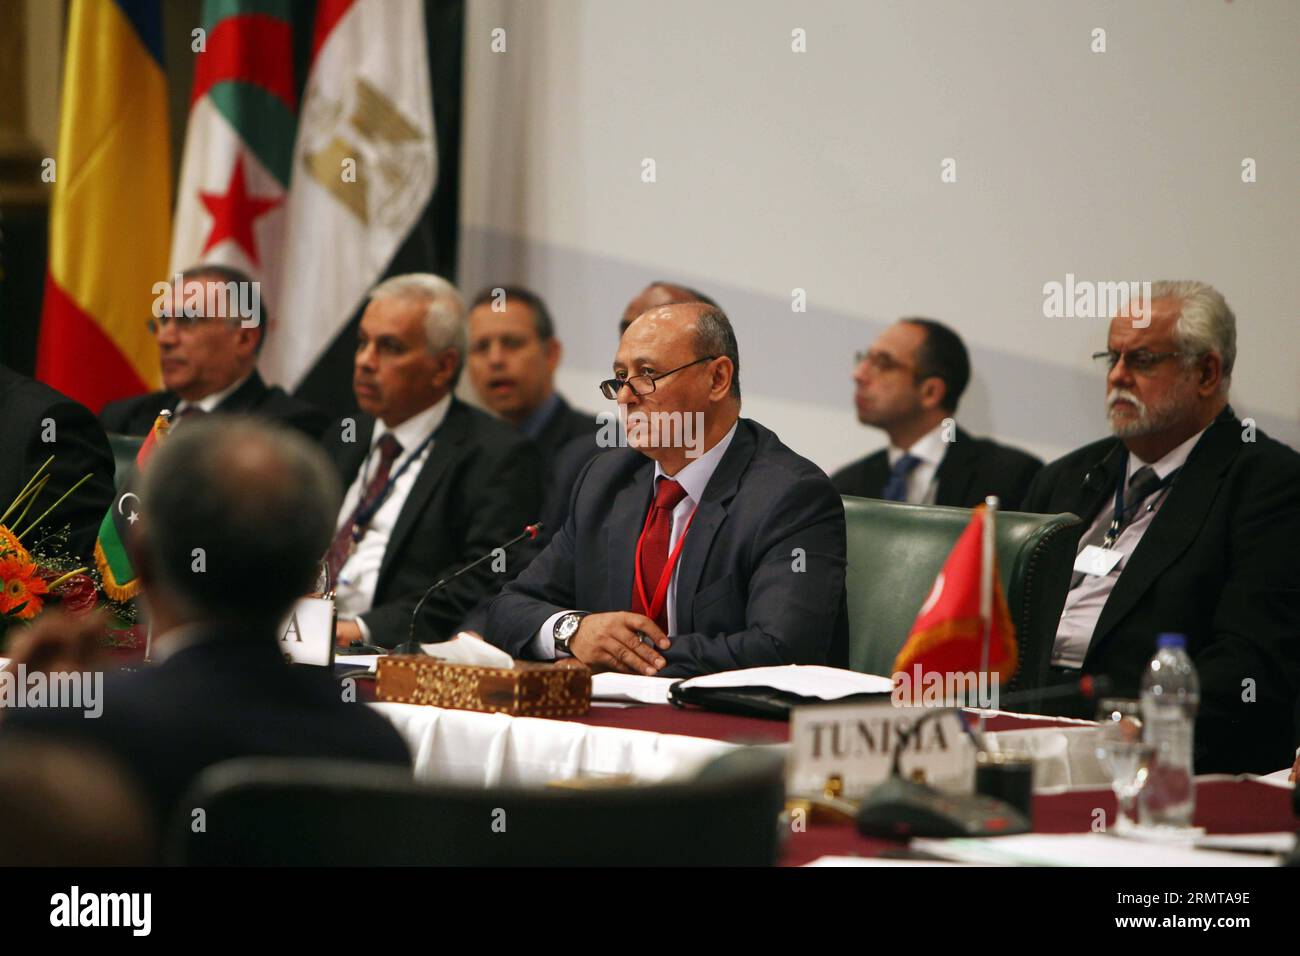 (140825) -- KAIRO, 25. August 2014 -- libyscher Außenminister Mohamed Abdelaziz (C) nimmt am 4. Ministertreffen der Nachbarländer Libyens in Kairo, Ägypten, 25. August 2014 Teil. ) ÄGYPTEN-KAIRO-LIBYEN-TREFFEN AhmedxGomaa PUBLICATIONxNOTxINxCHN Kairo Aug 25 2014 libysche Außenminister Mohamed Abdel Aziz C nimmt an der 4. Ministertagung der Nachbarländer Libyens in Kairo Teil Ägypten Aug 25 2014 Ägypten Kairo Libyen Treffen PUBLICATIONxNOTxINxCHN Stockfoto